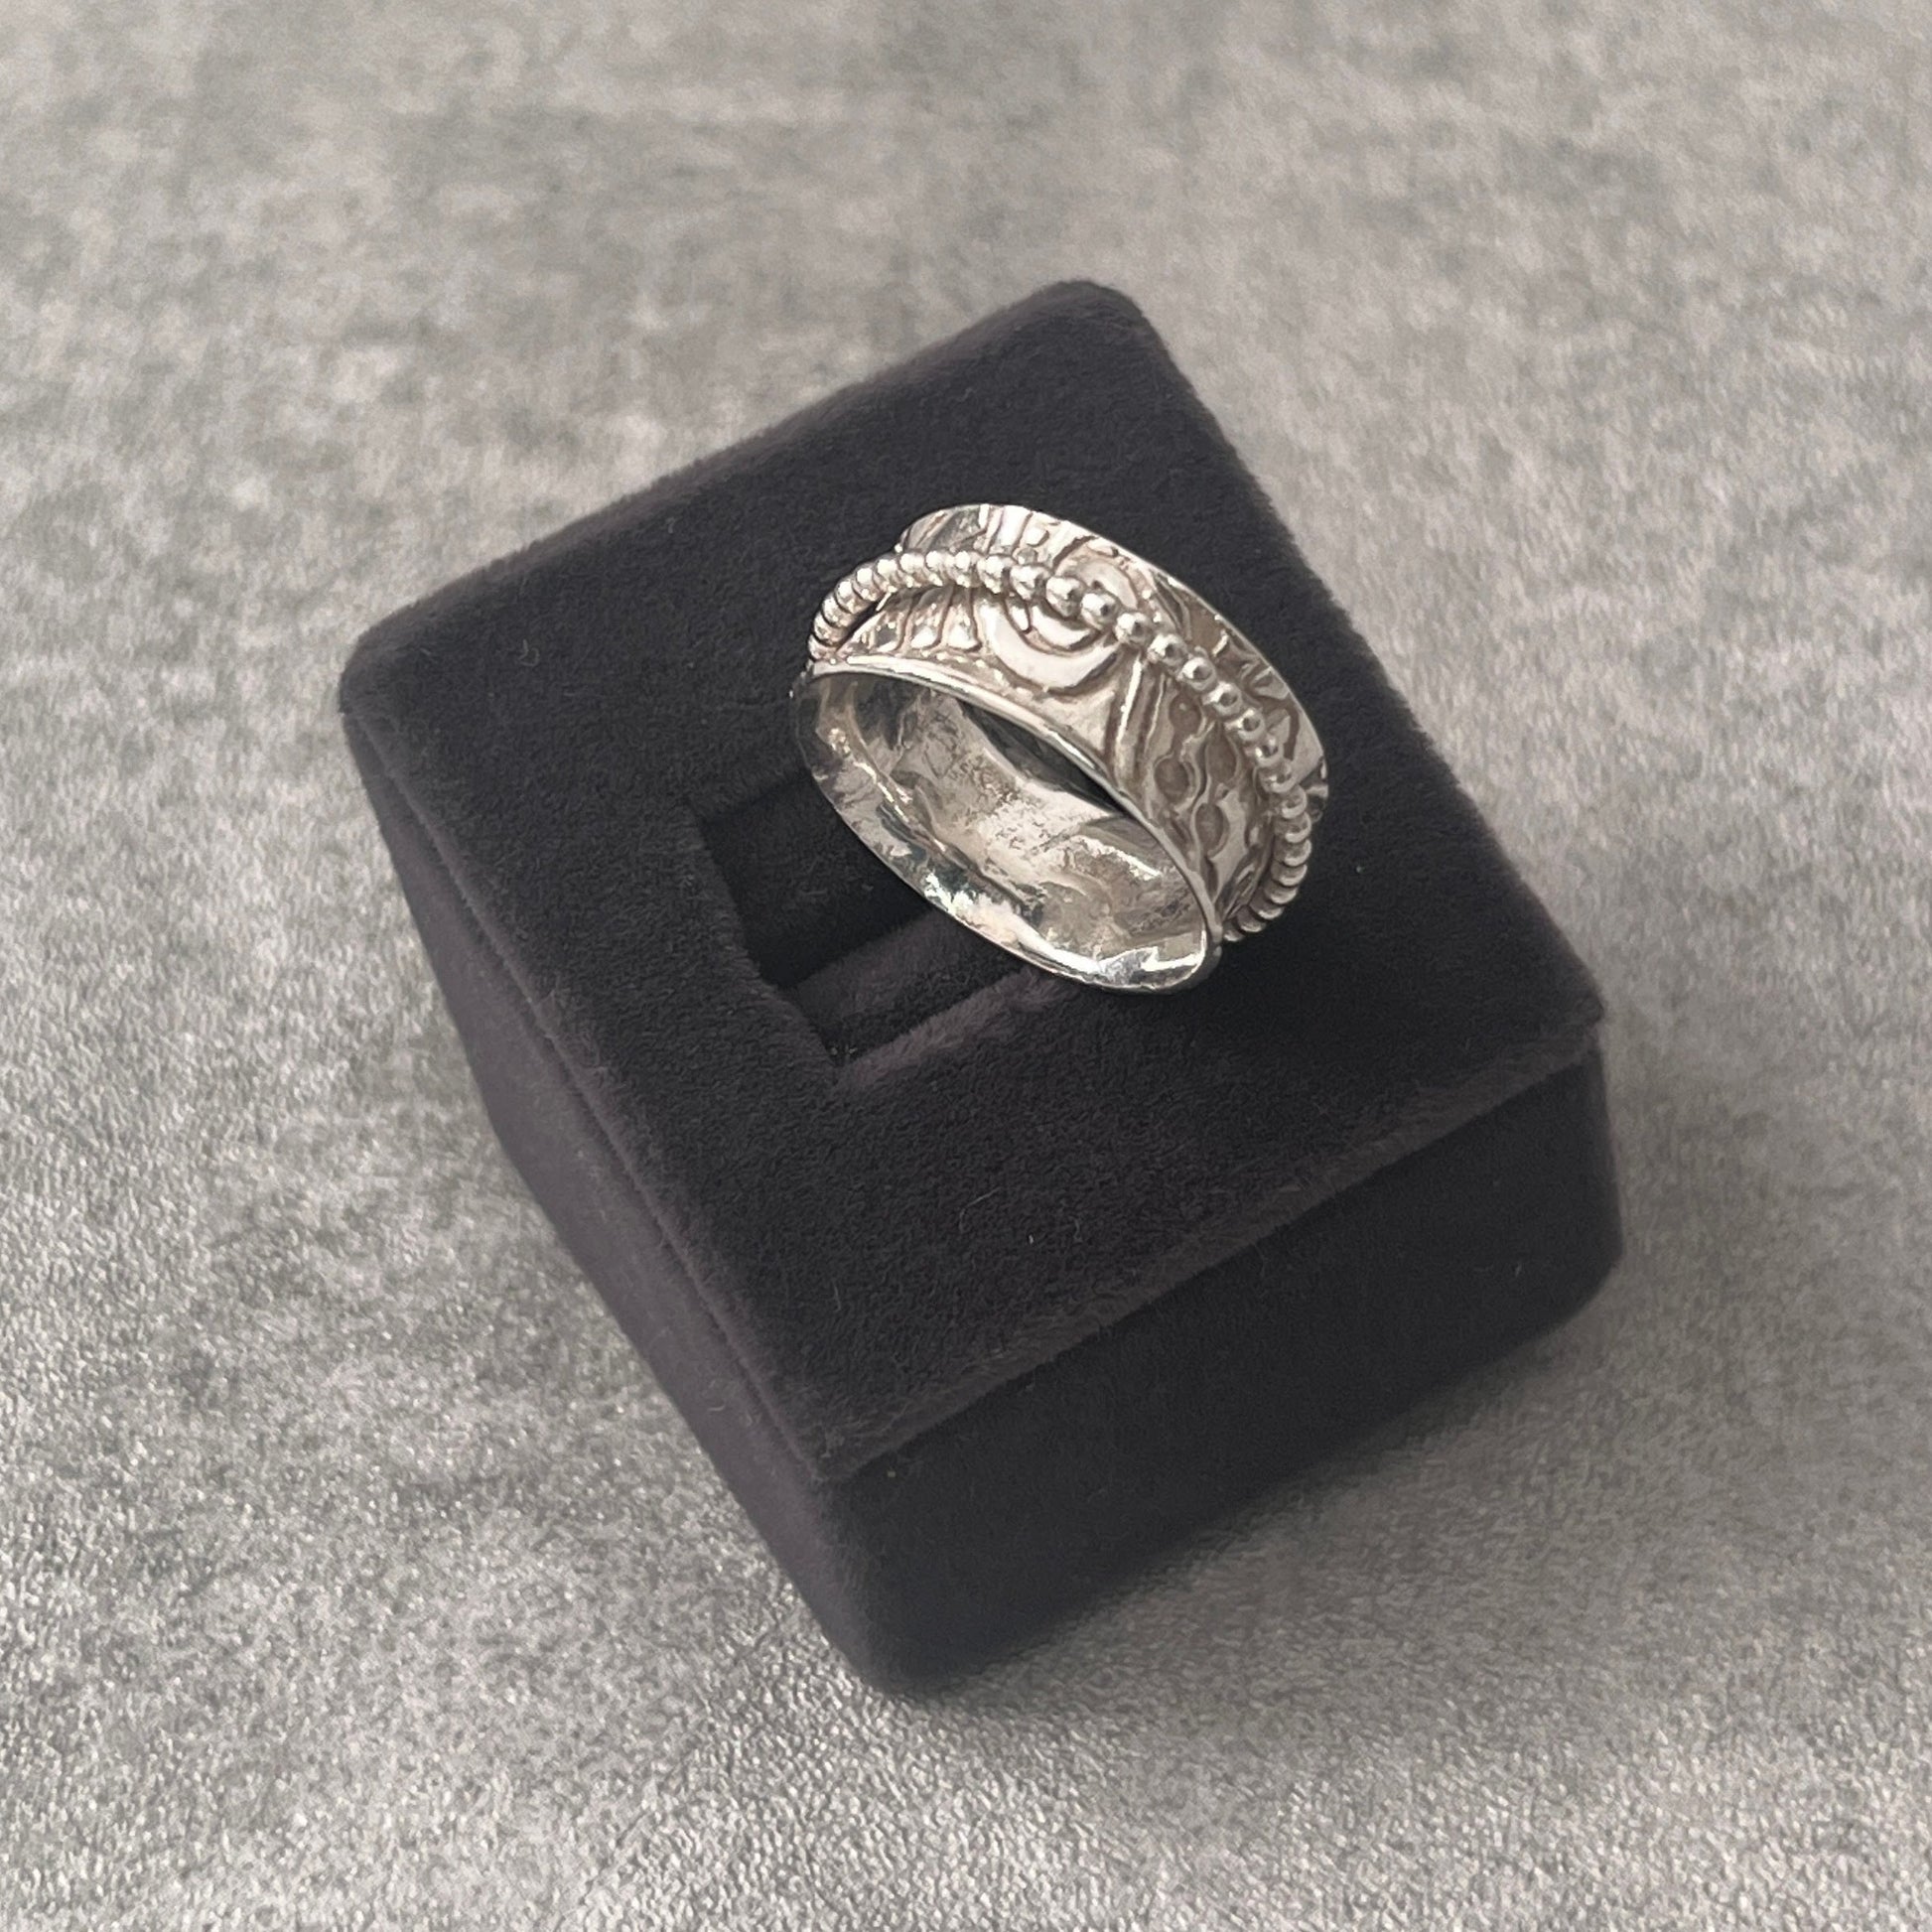 Spinner ring in a grey velvet box